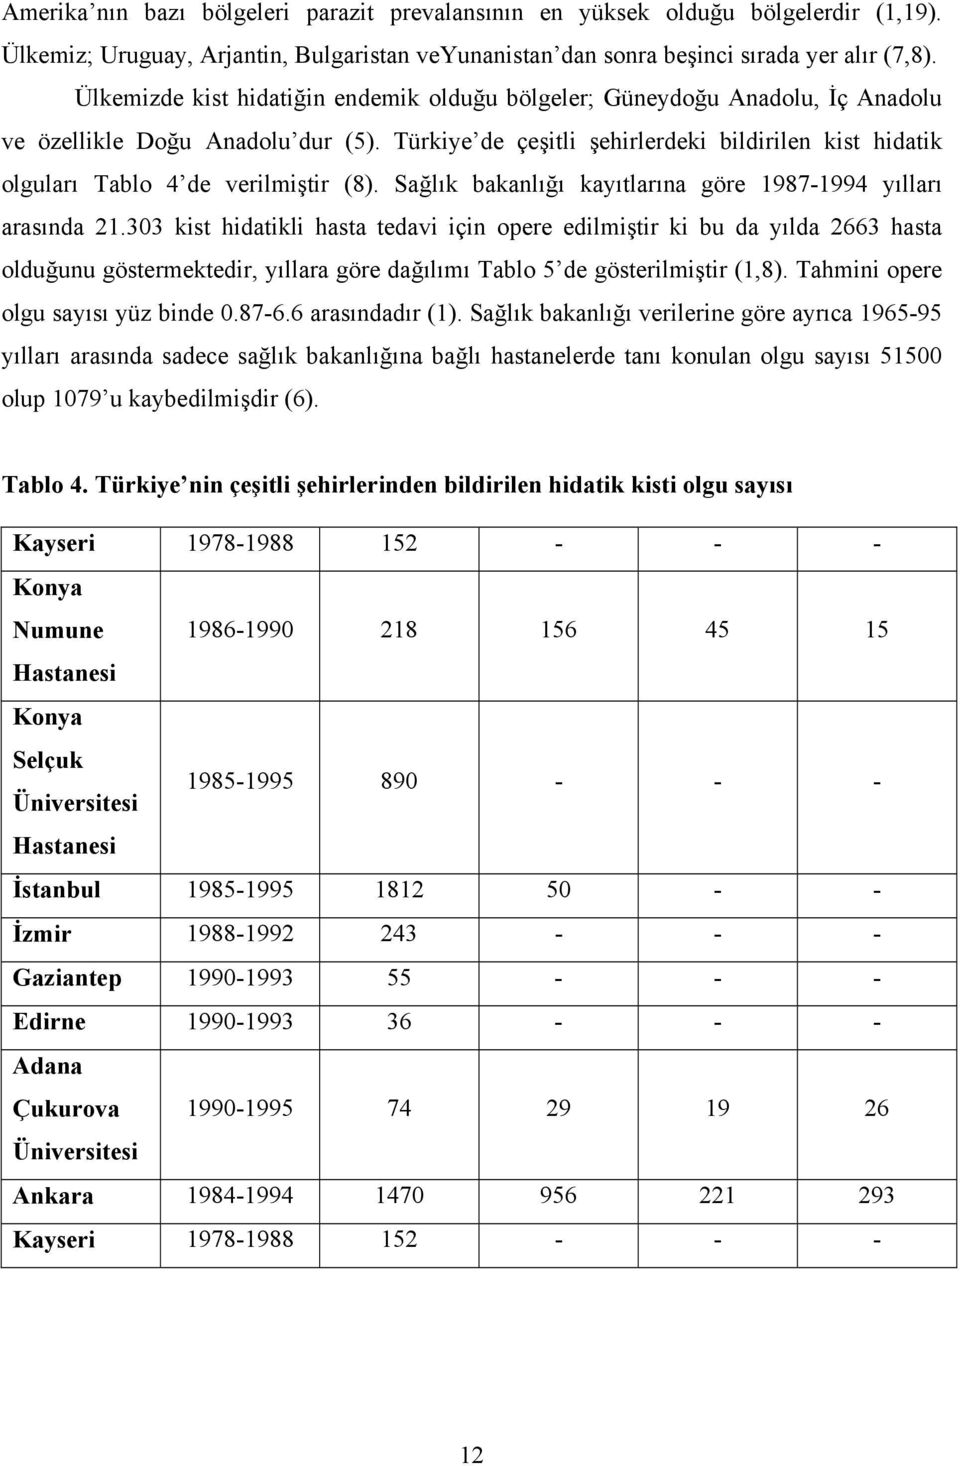 Türkiye de çeşitli şehirlerdeki bildirilen kist hidatik olguları Tablo 4 de verilmiştir (8). Sağlık bakanlığı kayıtlarına göre 1987-1994 yılları arasında 21.